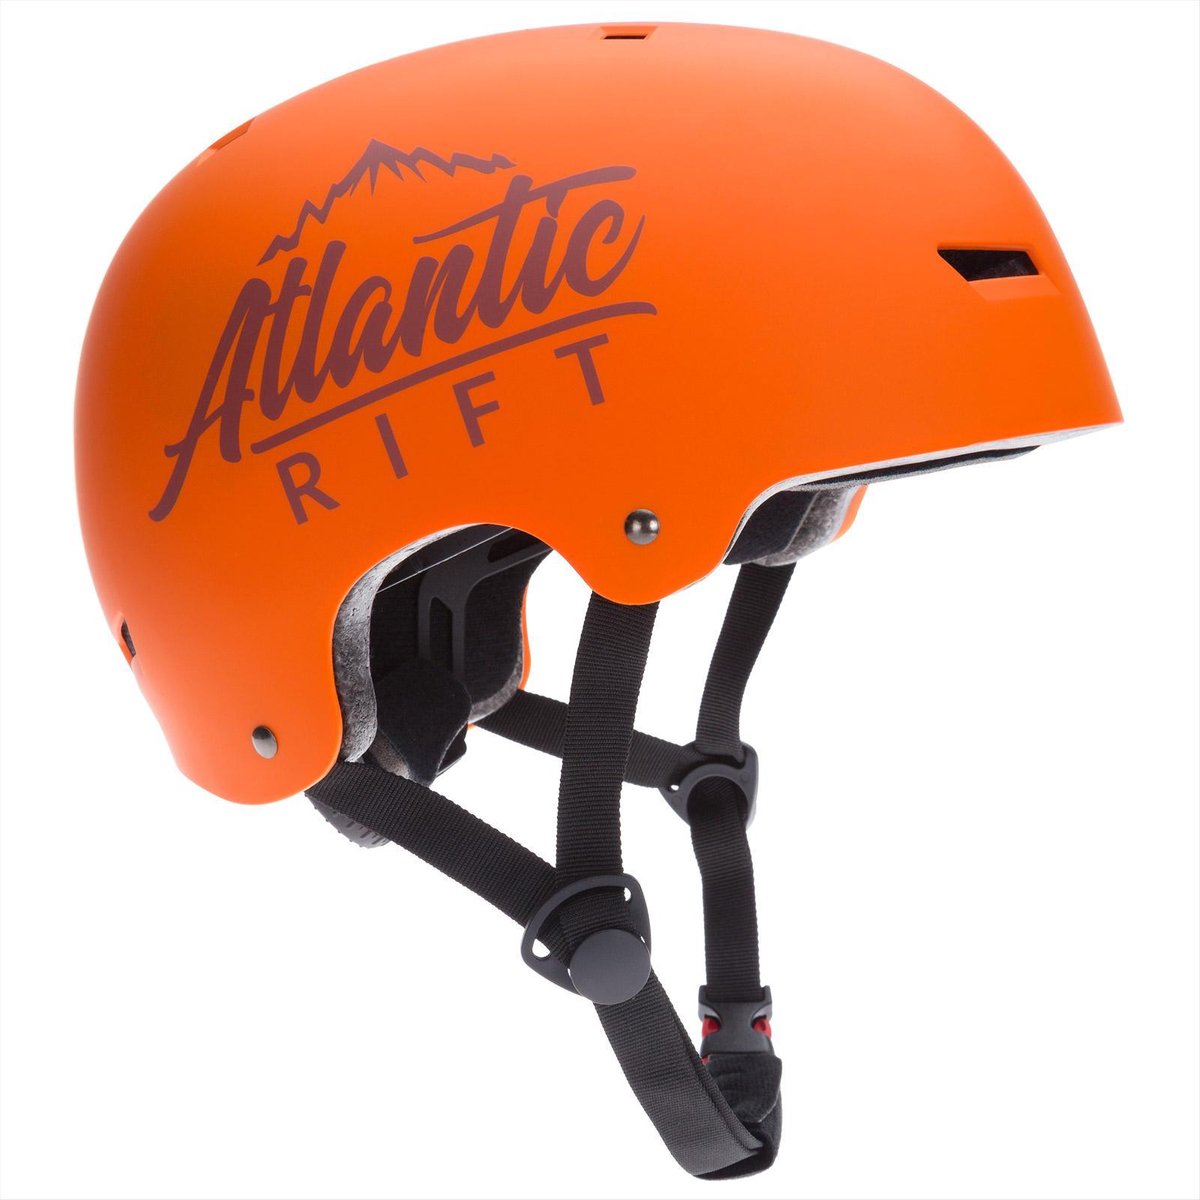 Deuba Skate Helm – Voor Kinderen van 3 tot 13 jaar – Maat S Oranje